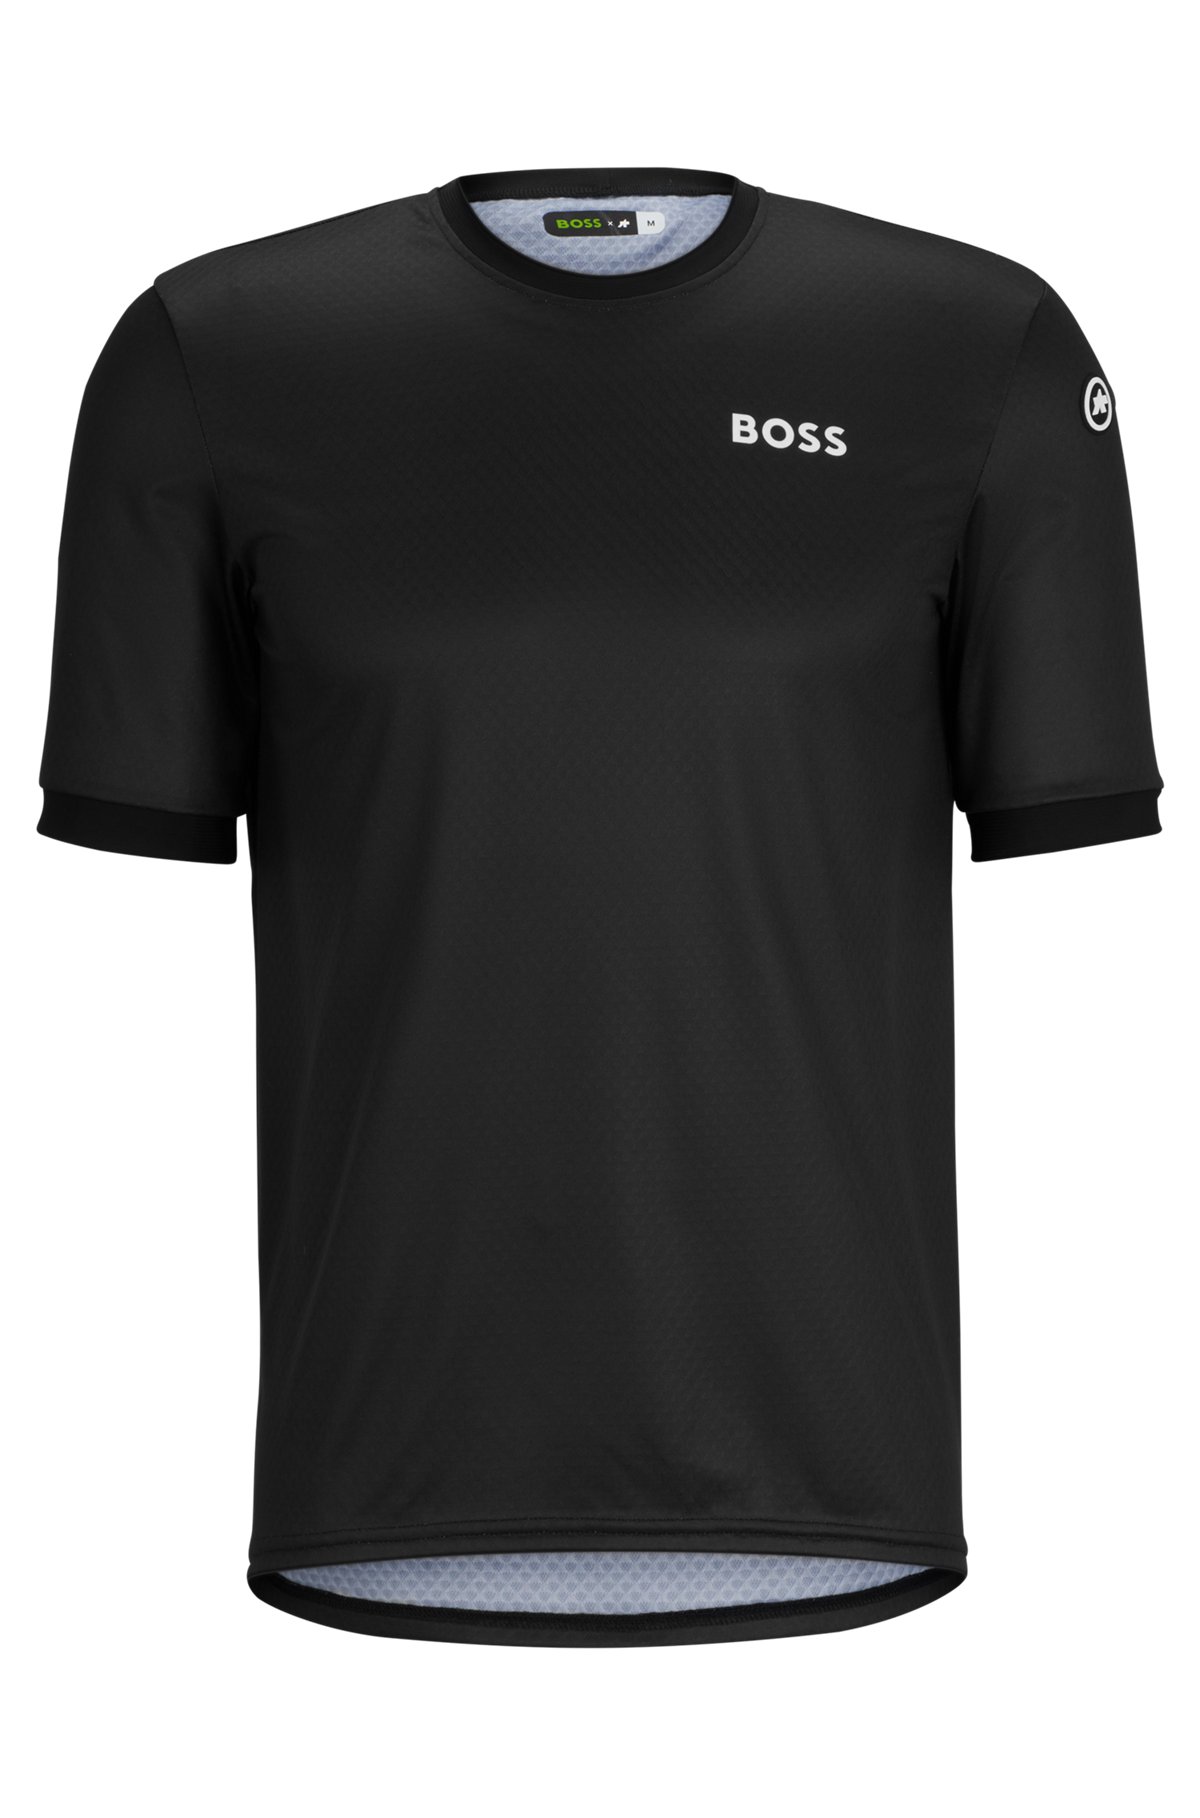 BOSS x ASSOS regular-fit UPF35 jersey top with branding, Black